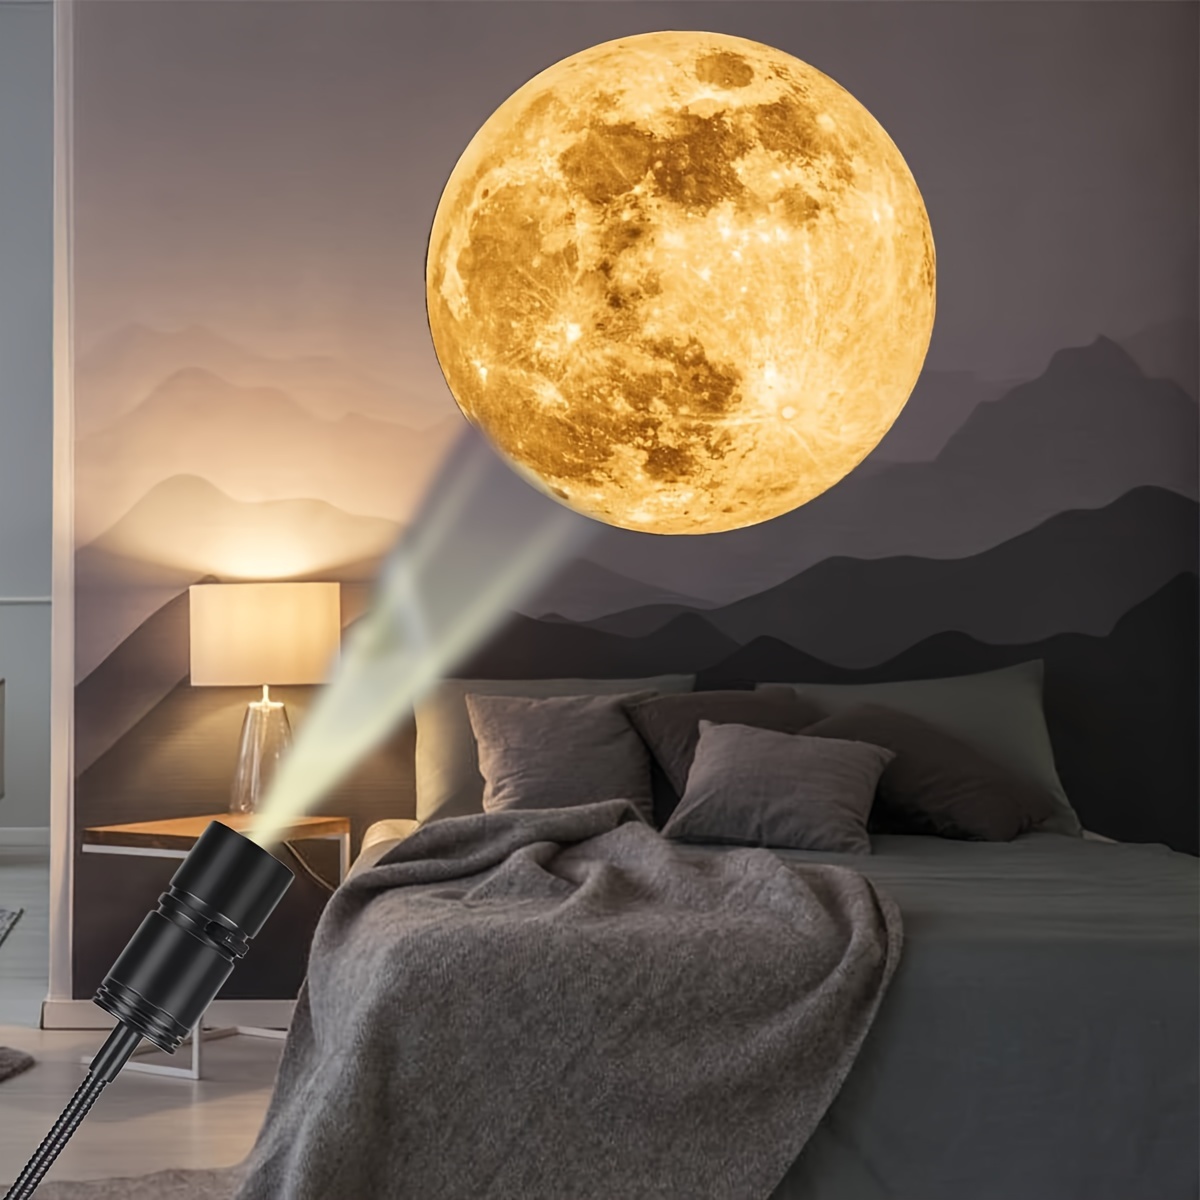 月地球プロジェクターナイトライト、ベッドルーム天井用USB地球投影LEDランプ、ギフト、ルームデコレーション、写真背景、360°回転可能な明るさ調節可能な月の大気プロジェクター、友達のためのギフト、月の愛好家の壁天井デコレーション、キャンプウェディングデコレーションハロウィンクリスマスデコレーション